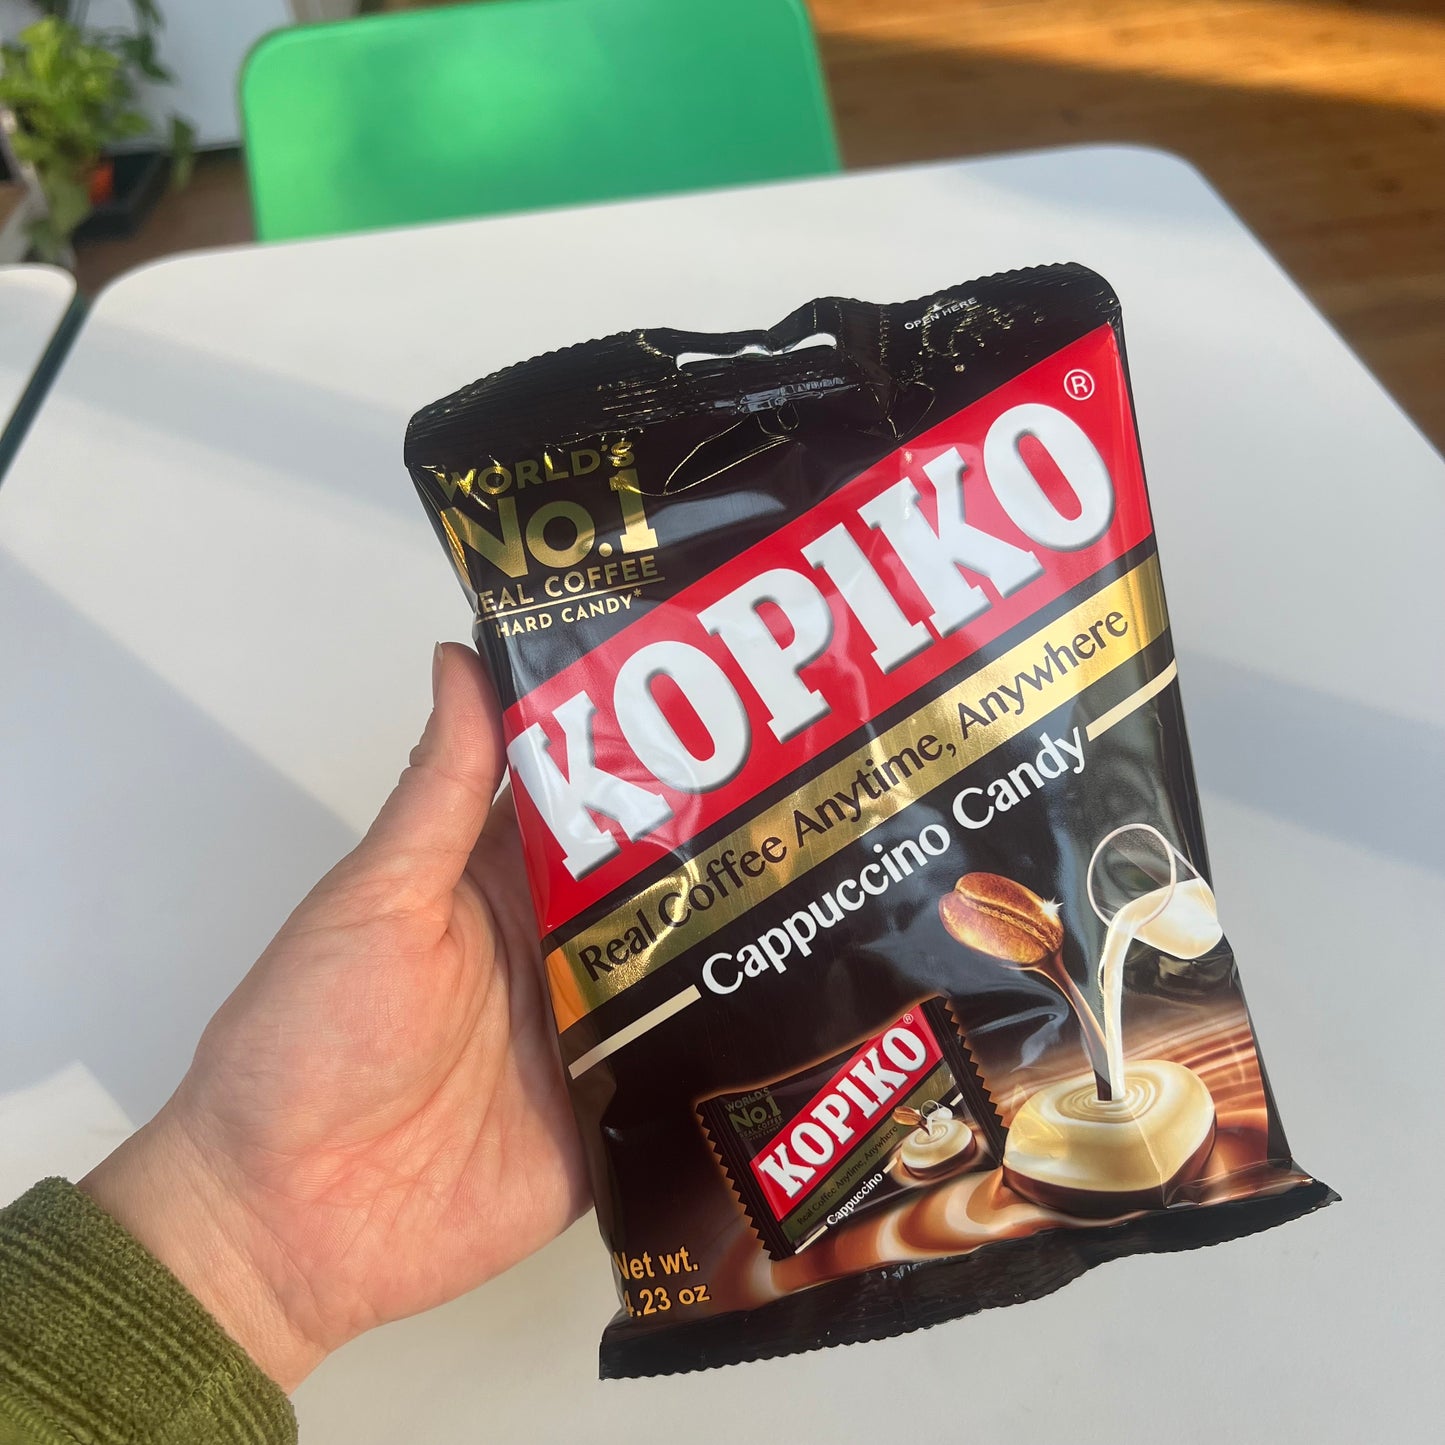 Kopiko - Cappuccino Candy